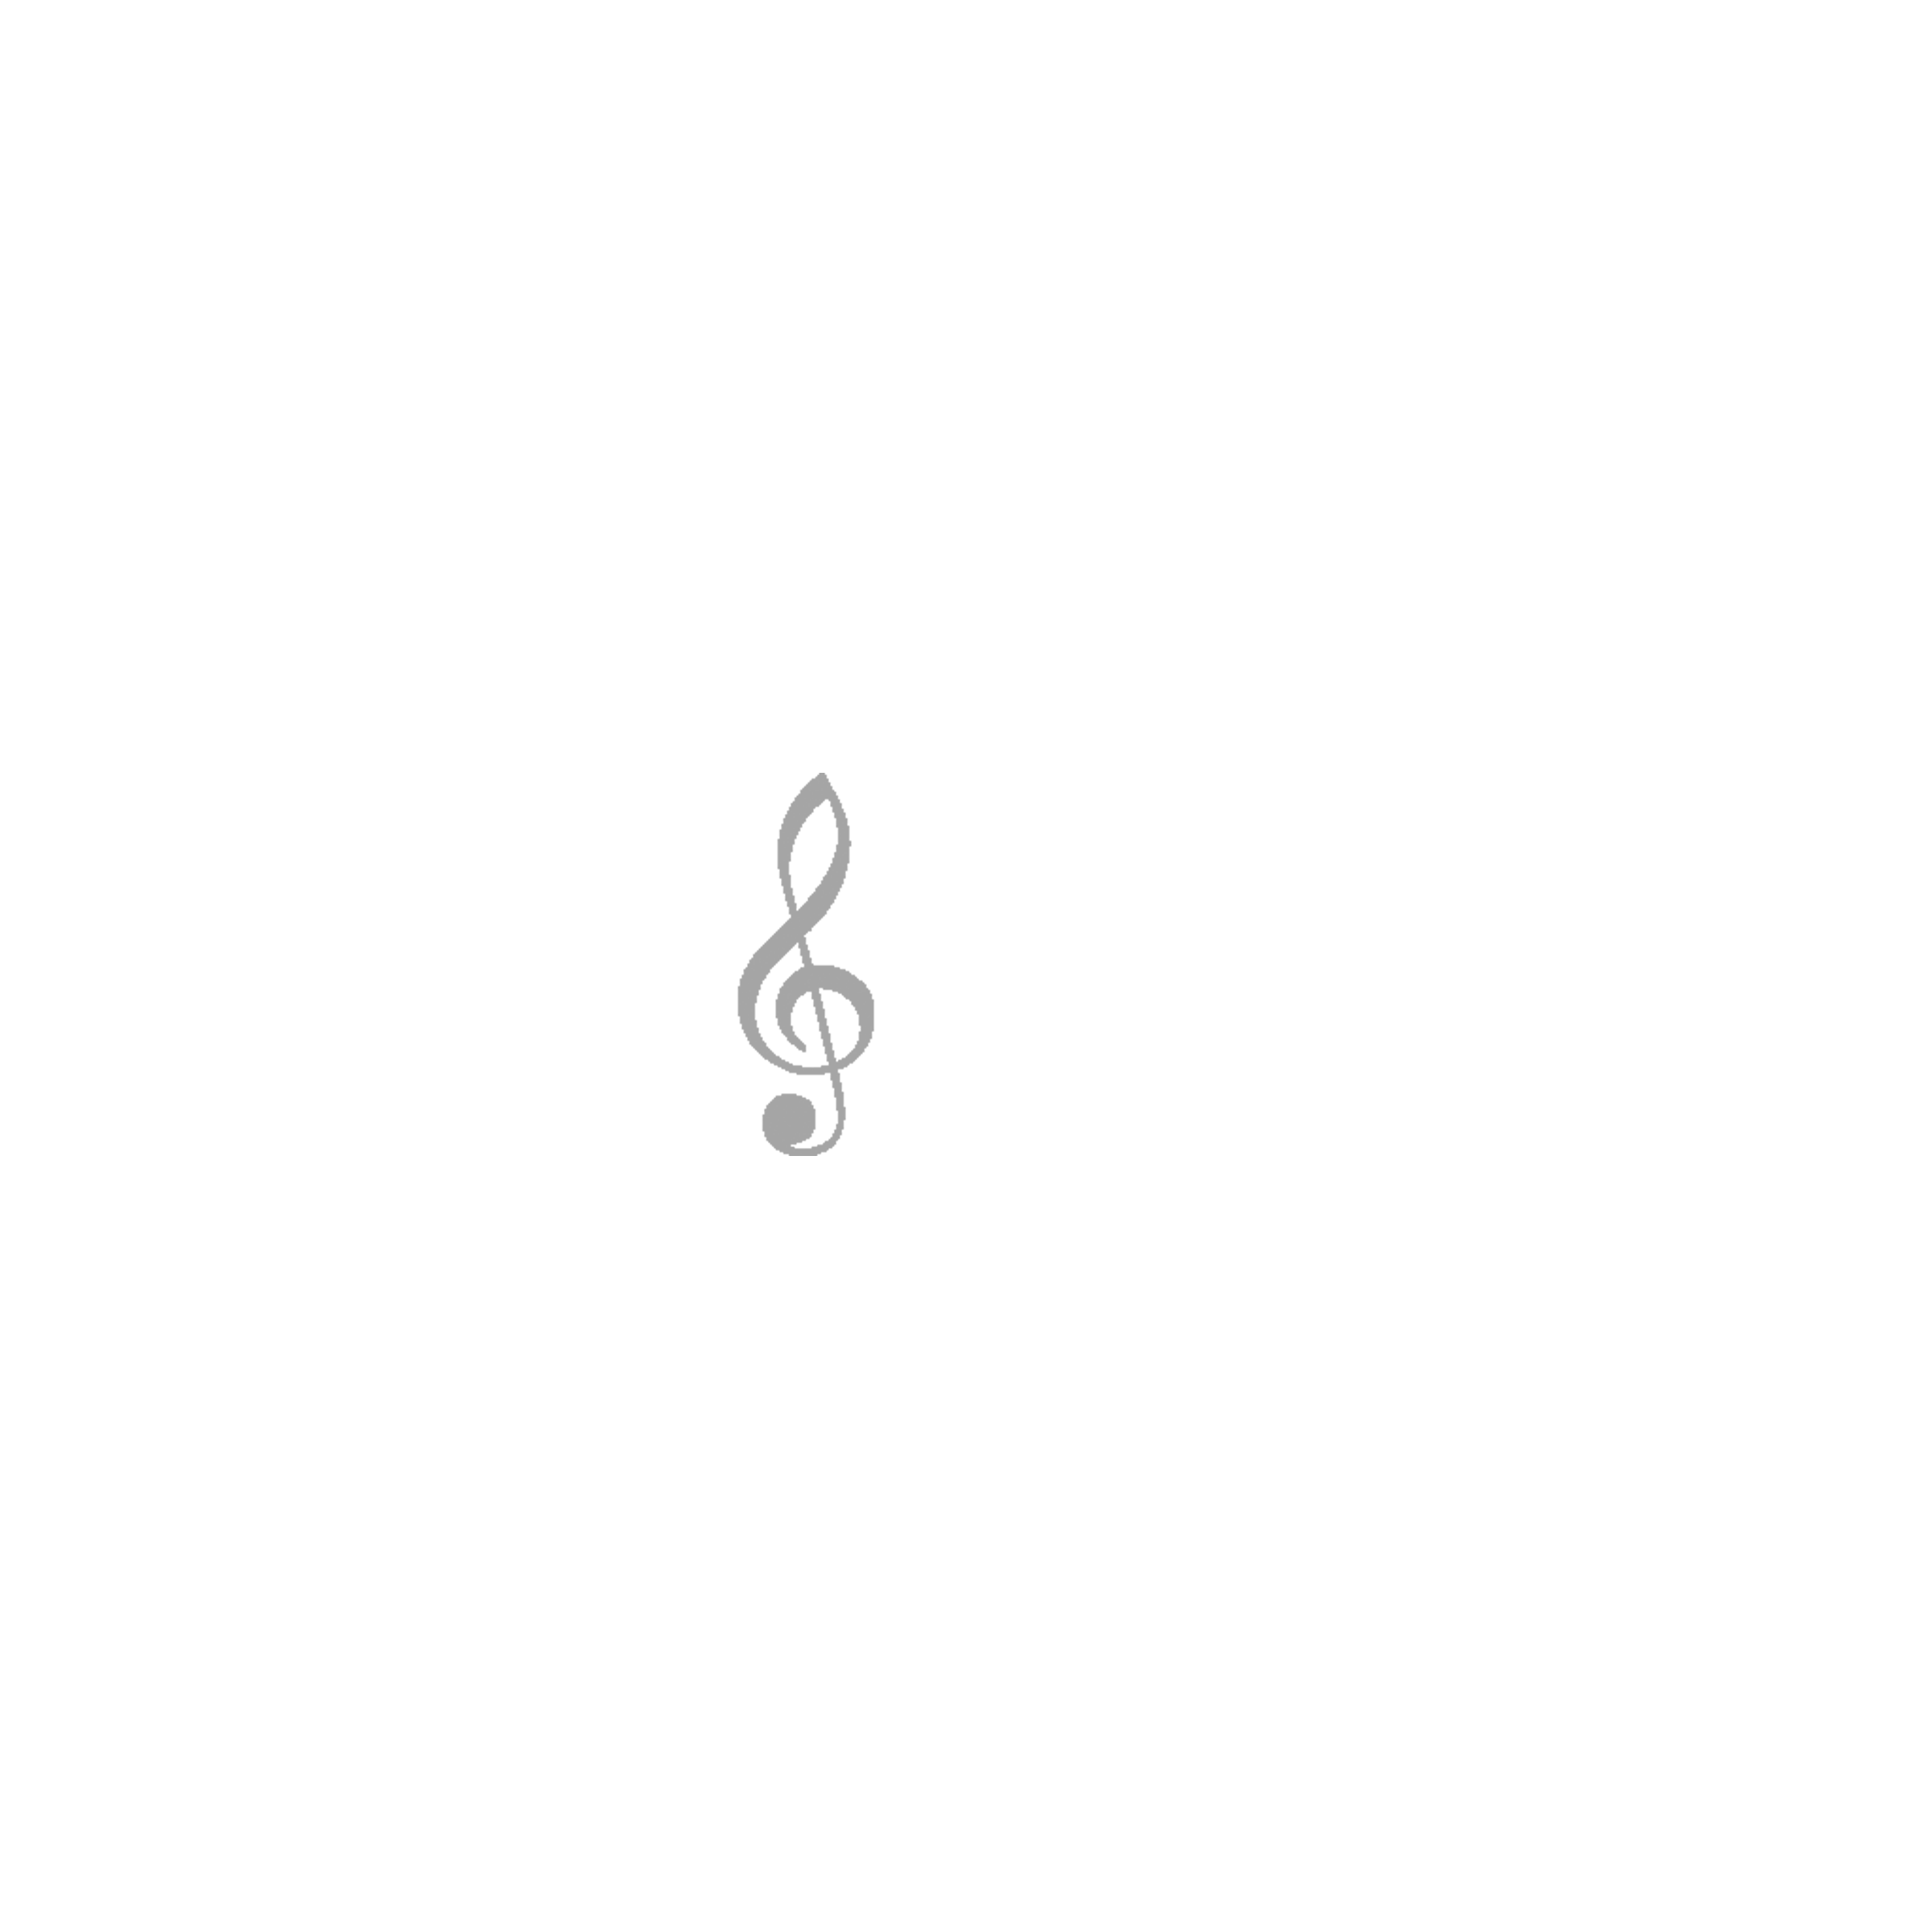 Vinegar Hill Music Theatre